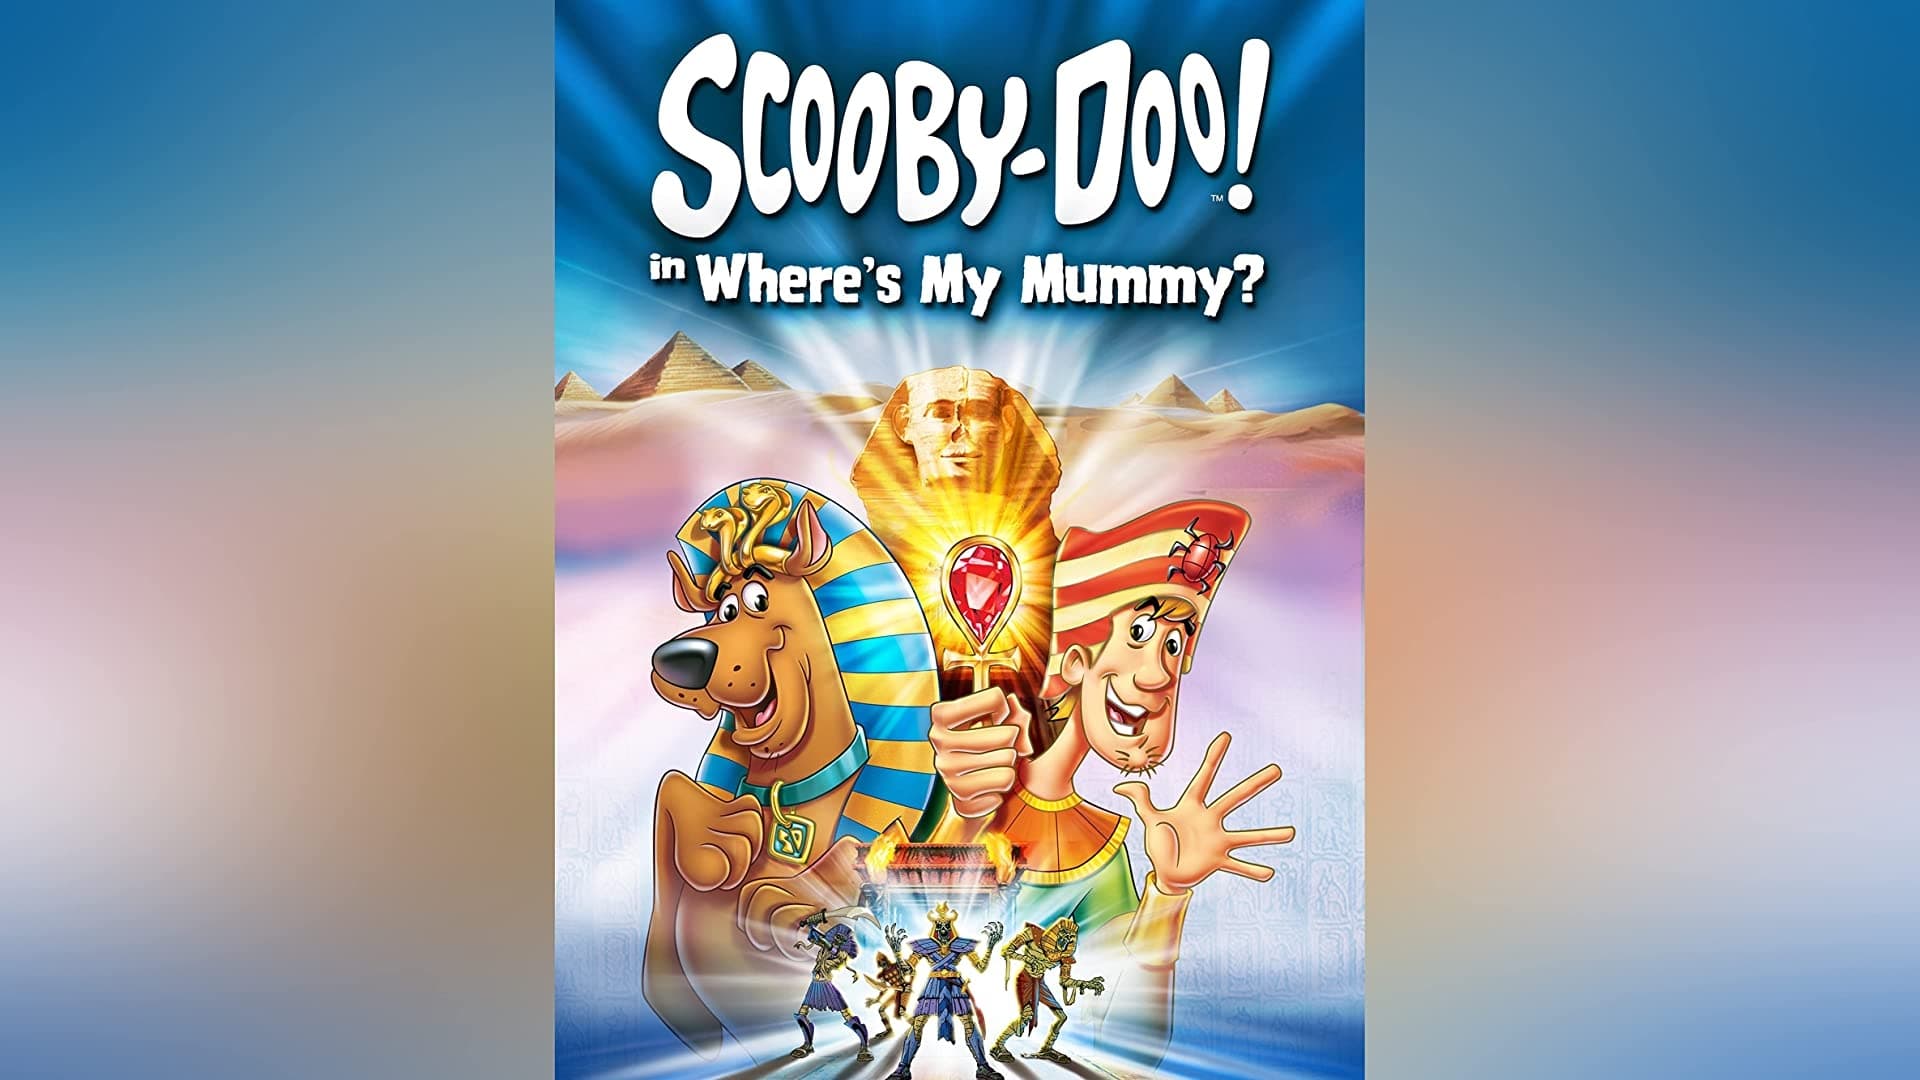 ¡Scooby Doo! en el Misterio del Faraón